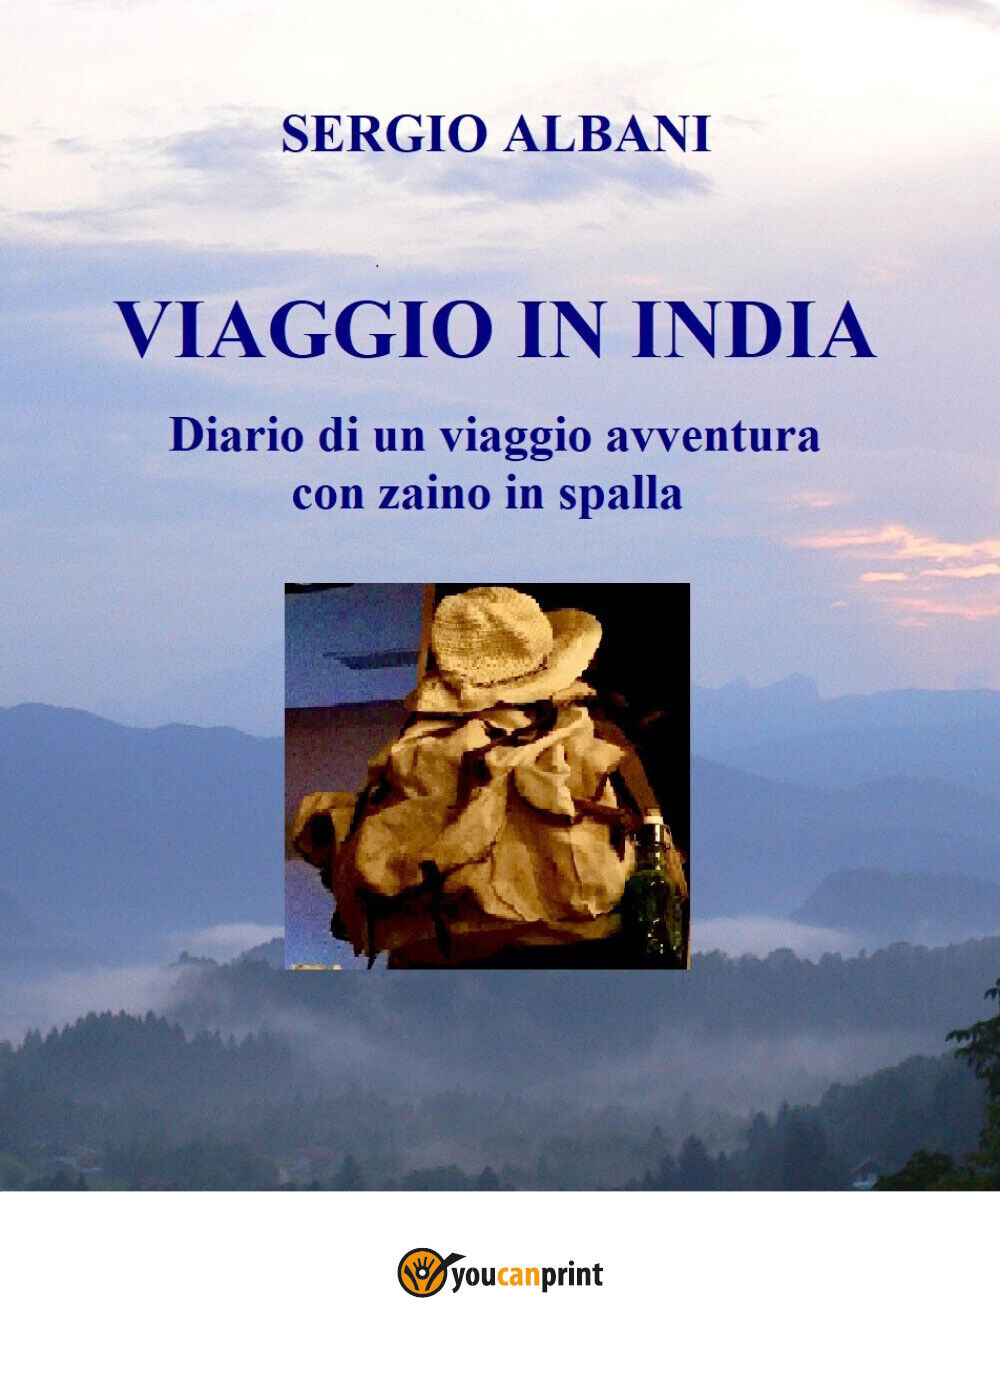 Viaggio in India di Sergio Albani, 2020, Youcanprint